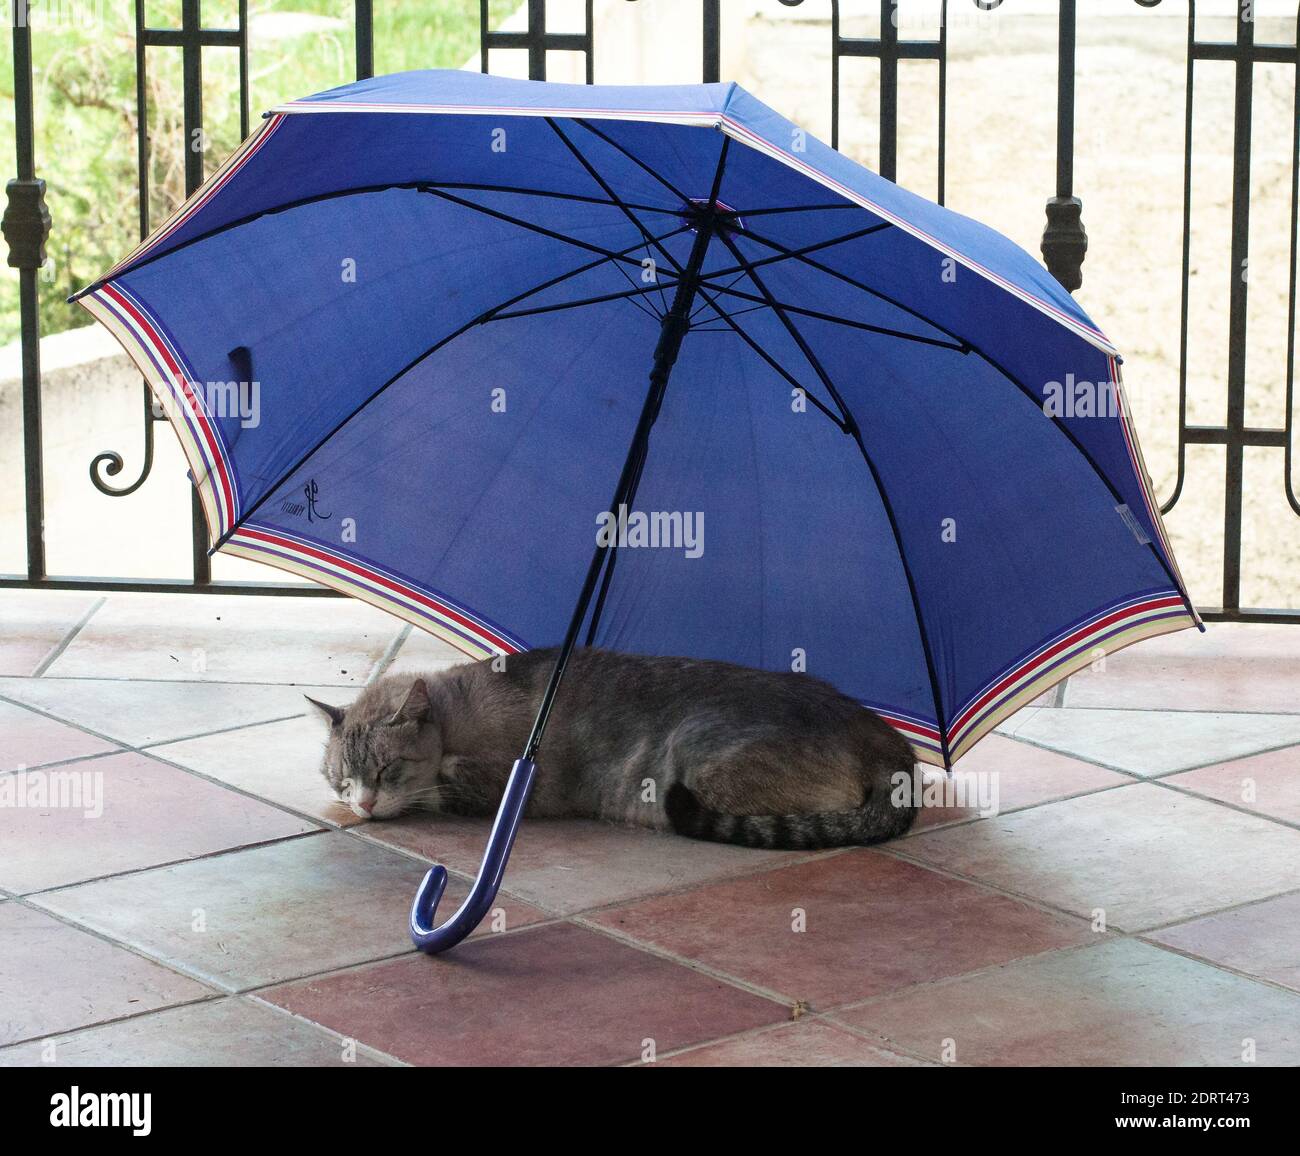 Katze Schläft Unter Dem Regenschirm Auf Dem Boden Stockfotografie - Alamy